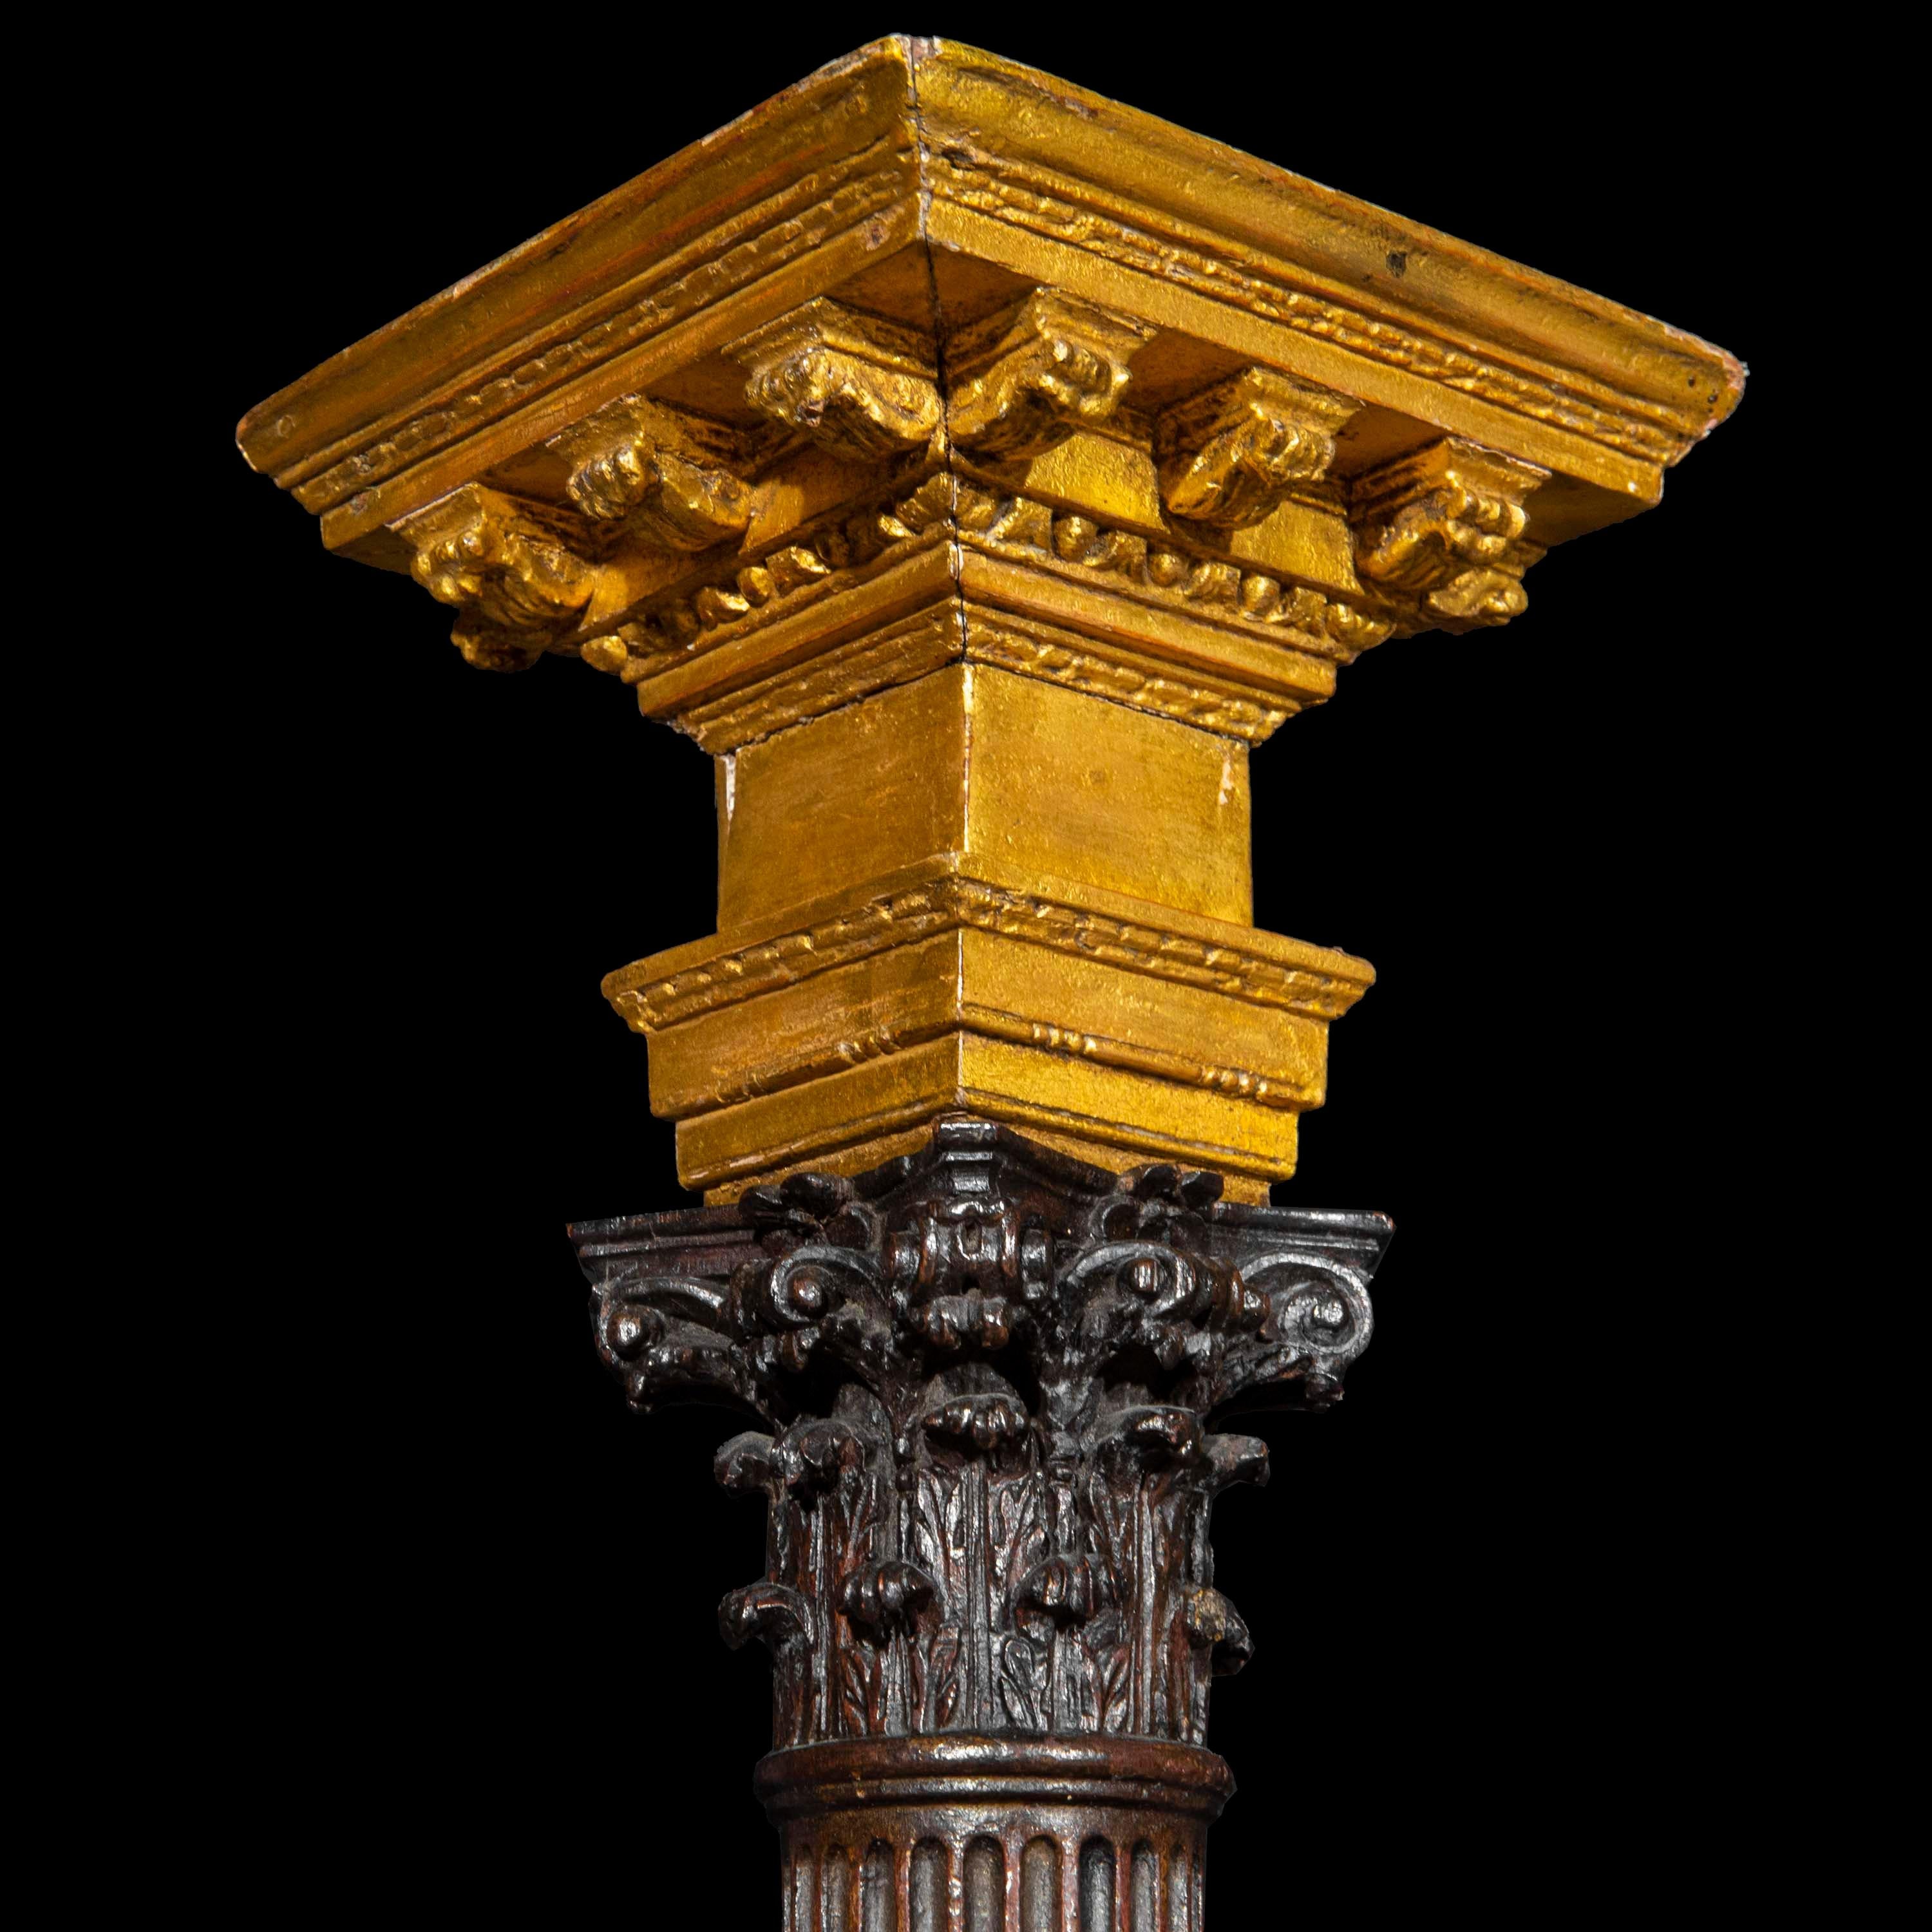 Un modèle architectural extrêmement rare et exquis d'une colonne corinthienne inspiré du Grand Tour
Angleterre, troisième quart du XVIIIe siècle.

Pourquoi nous l'aimons
Exquisément sculptée et rehaussée d'or, cette rarissime survivance de l'âge